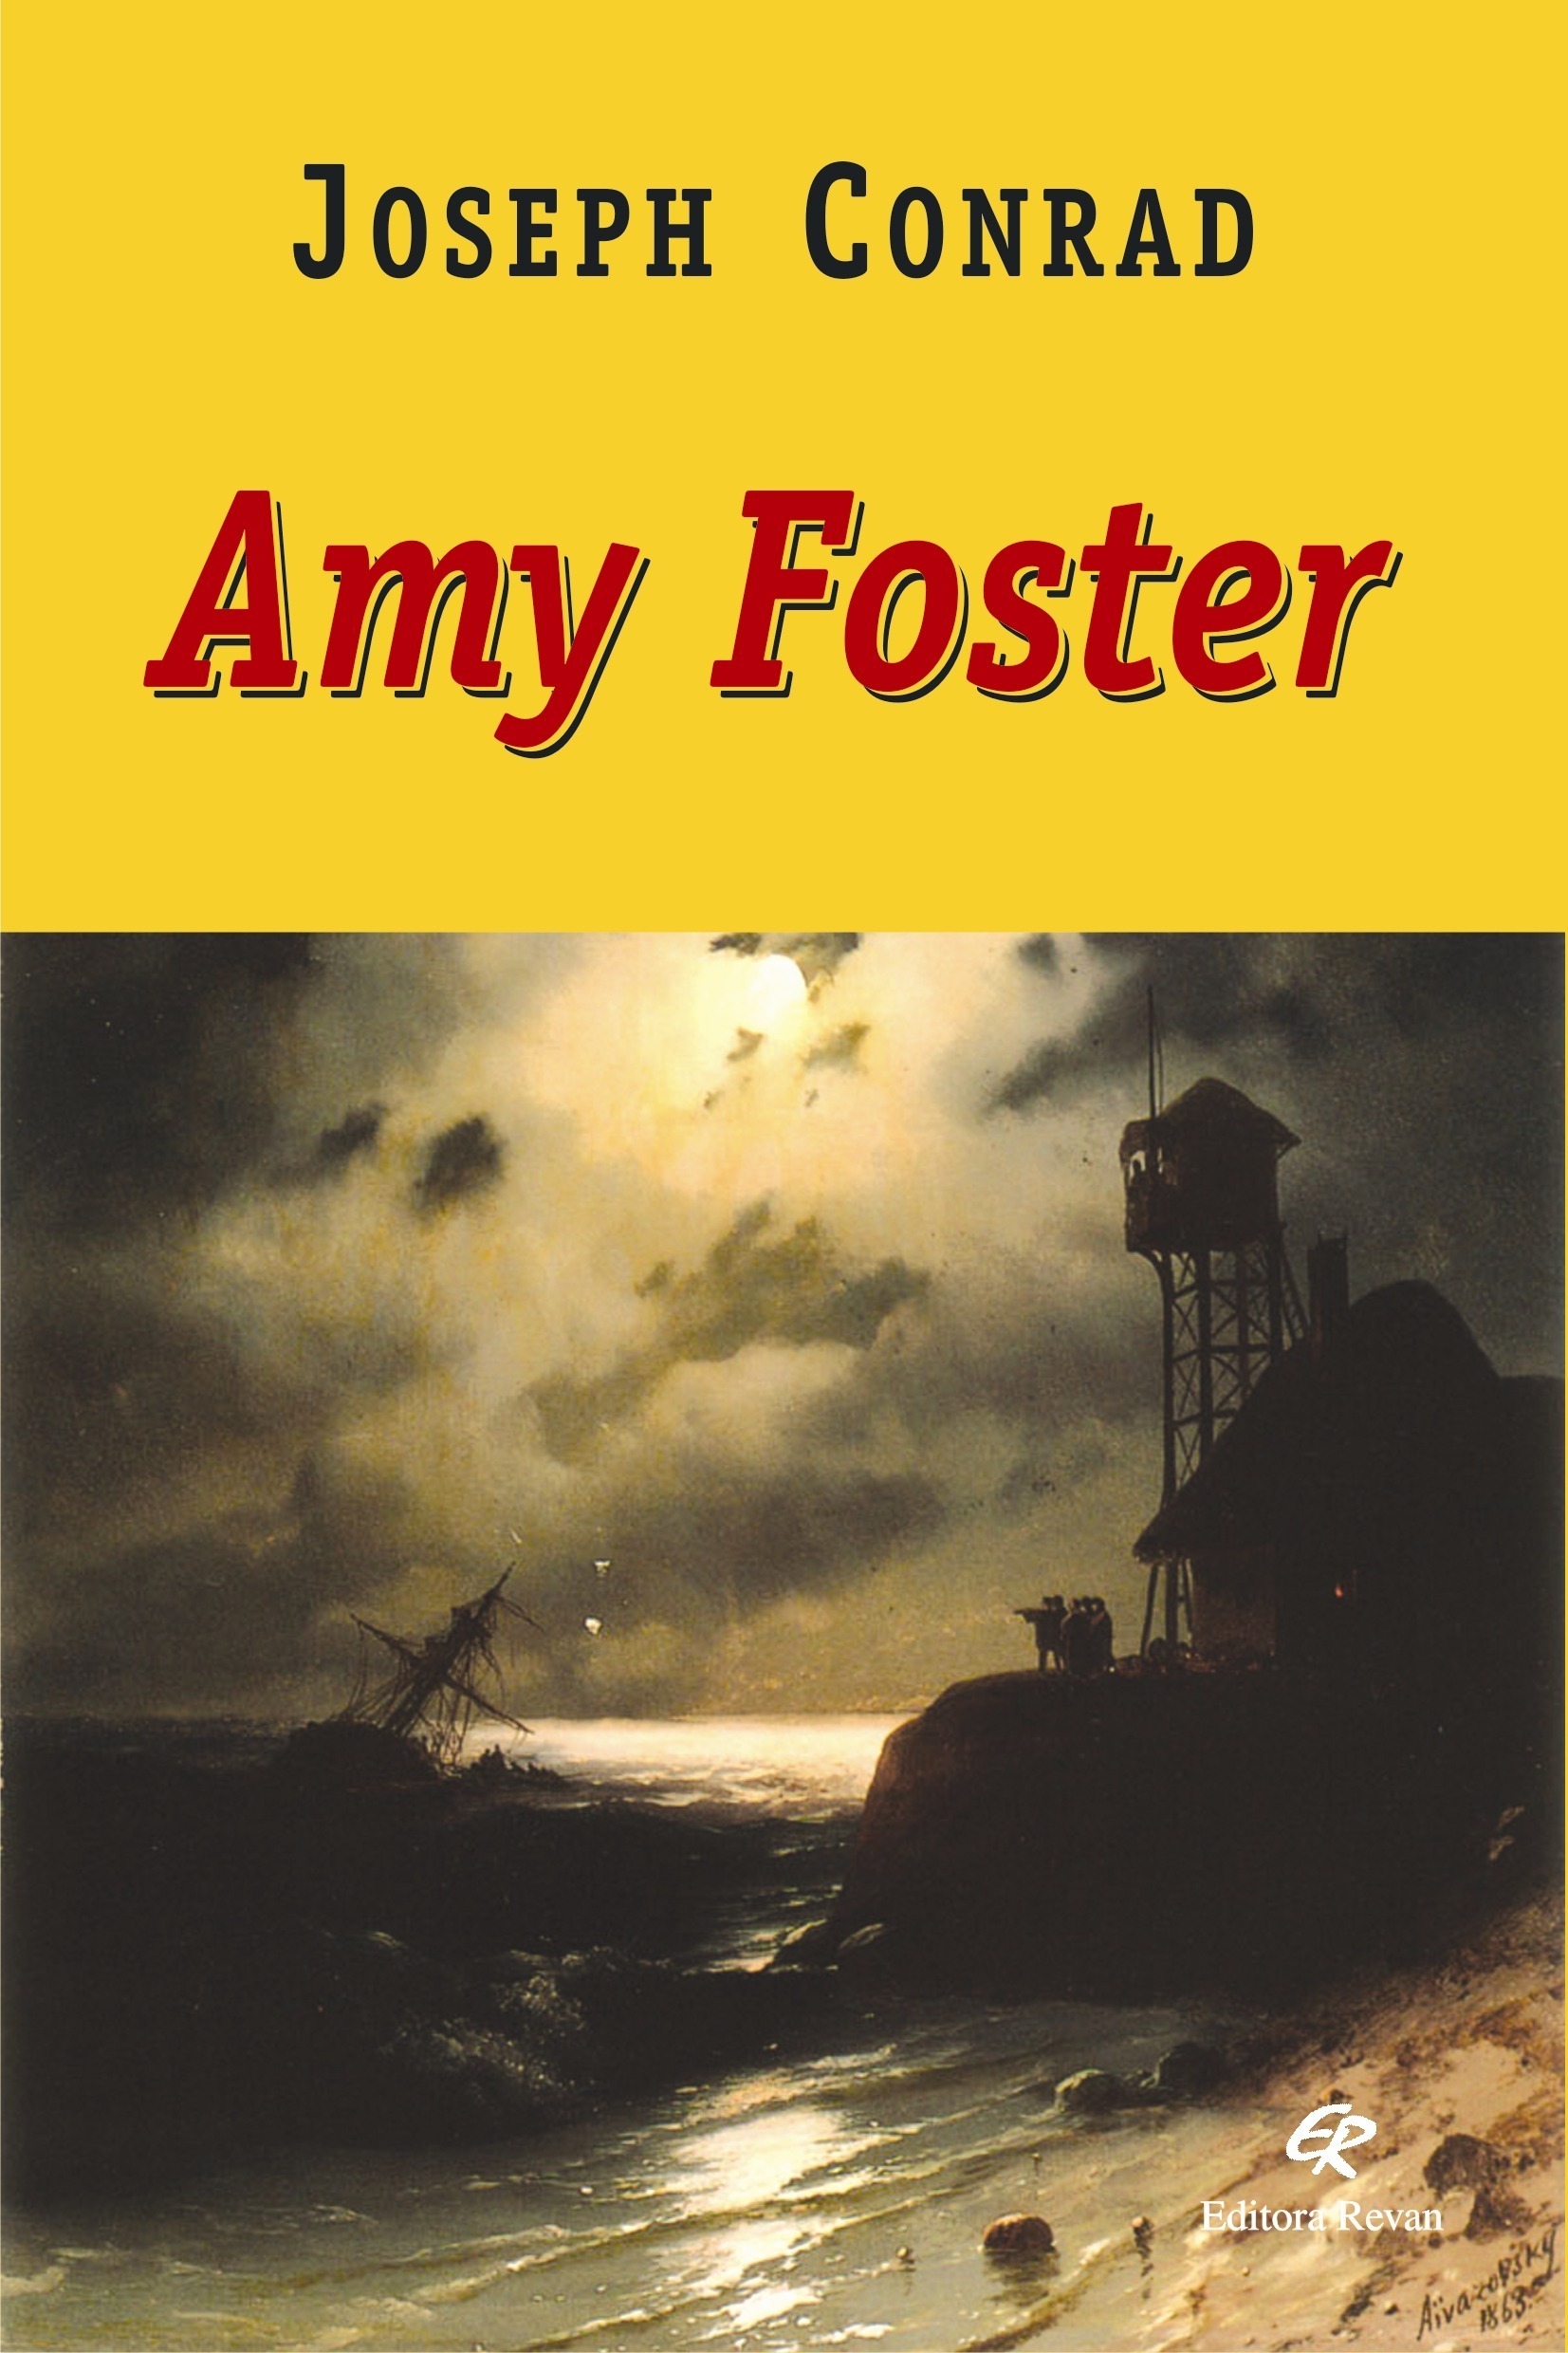 Amy Foster - Joseph Conrad